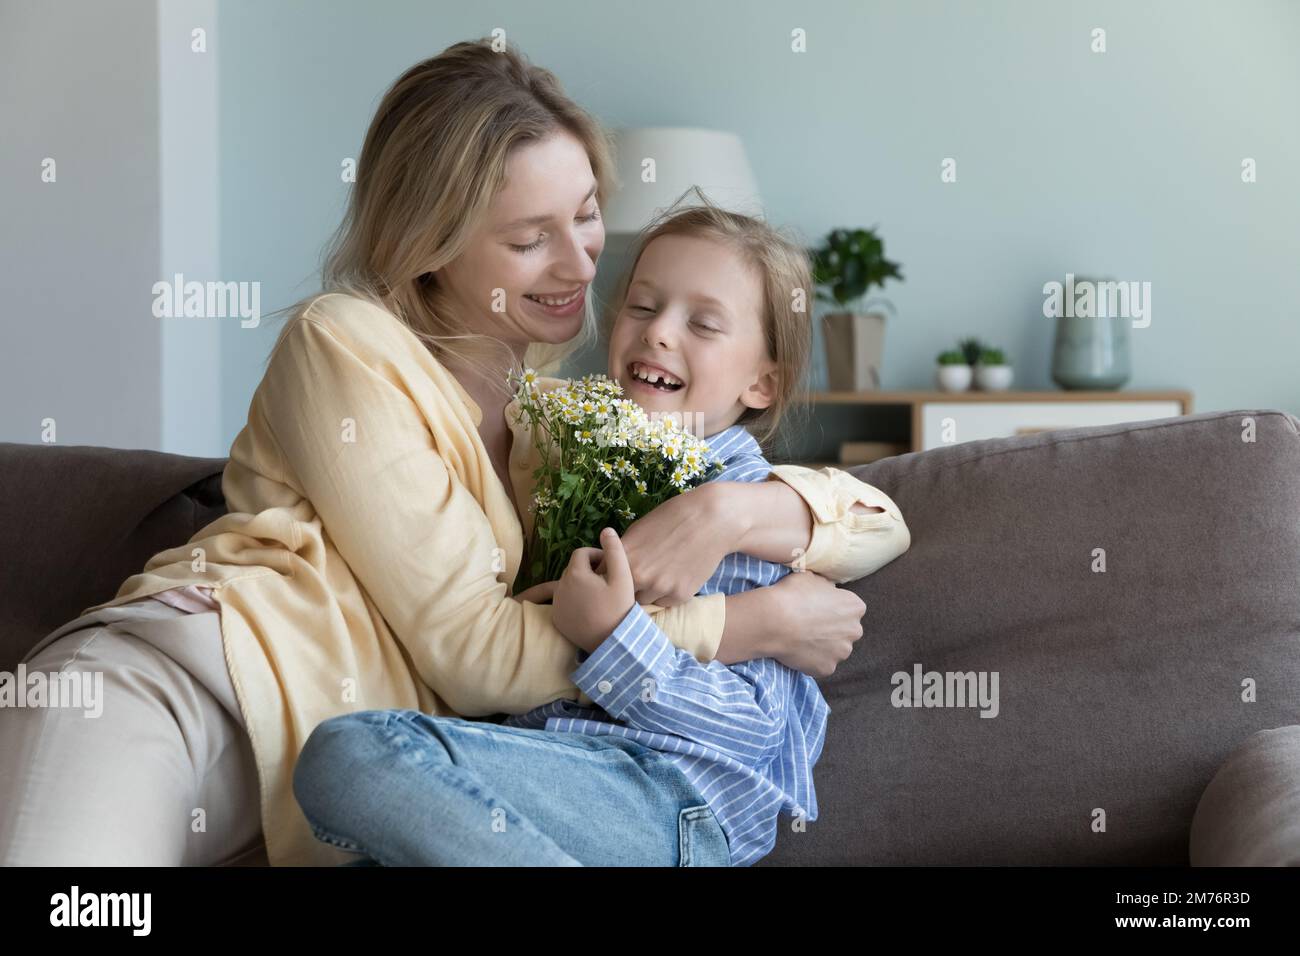 Bonne maman embrassant mignonne petite fille gaie enfant tenant des fleurs Banque D'Images